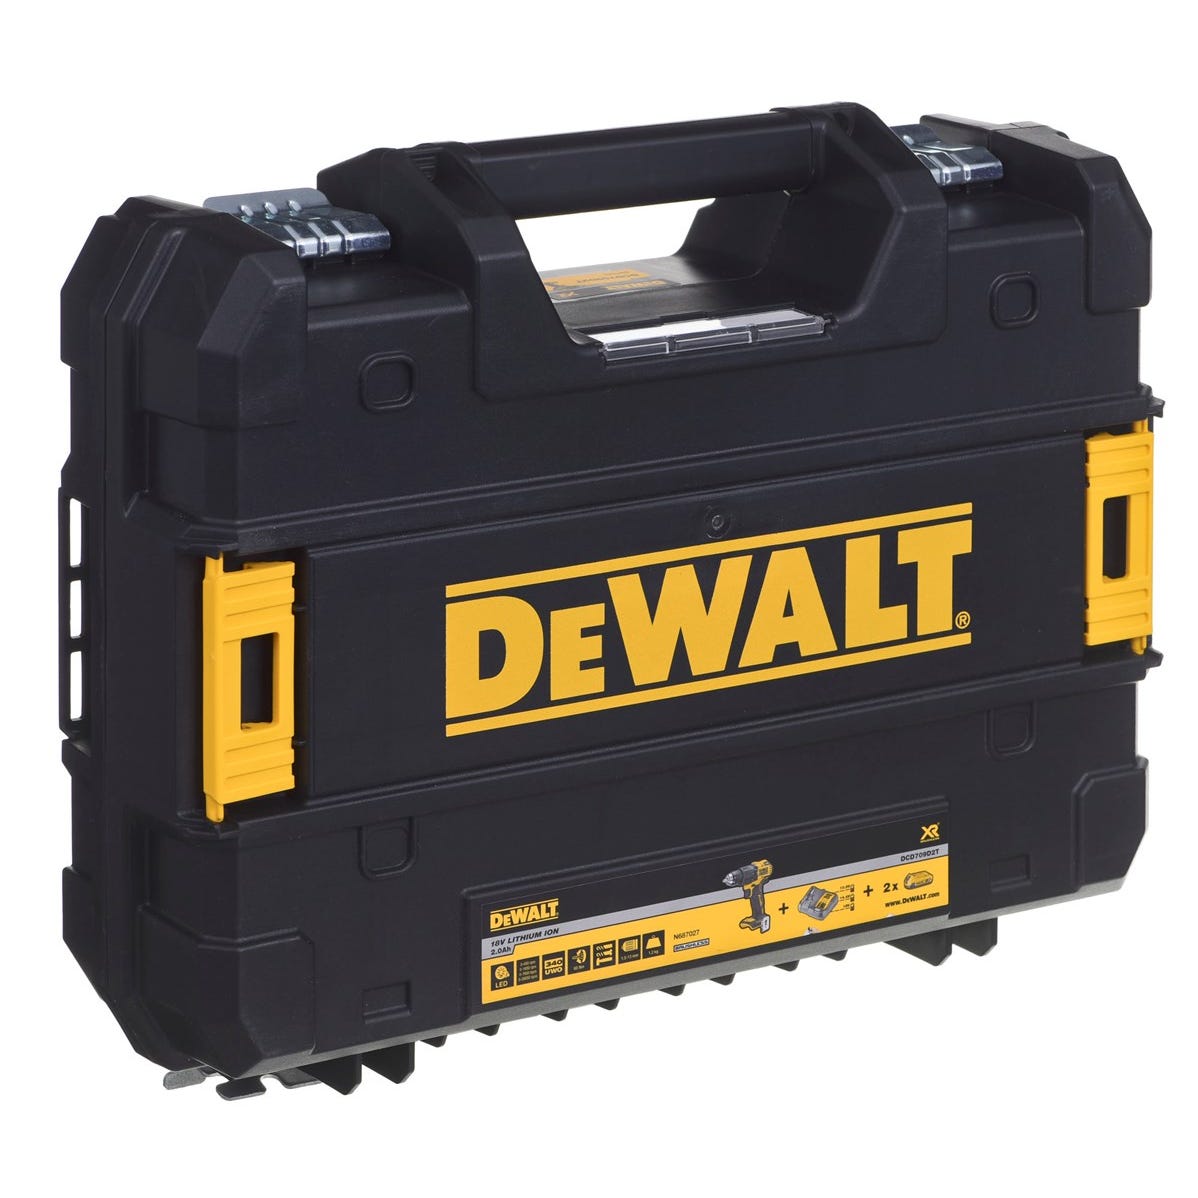 DeWalt DCD 709 D2T Perceuse-visseuse à percussion sans fil 18V 65Nm + 2x Batteries 2,0Ah + Chargeur + Coffret de transport 8